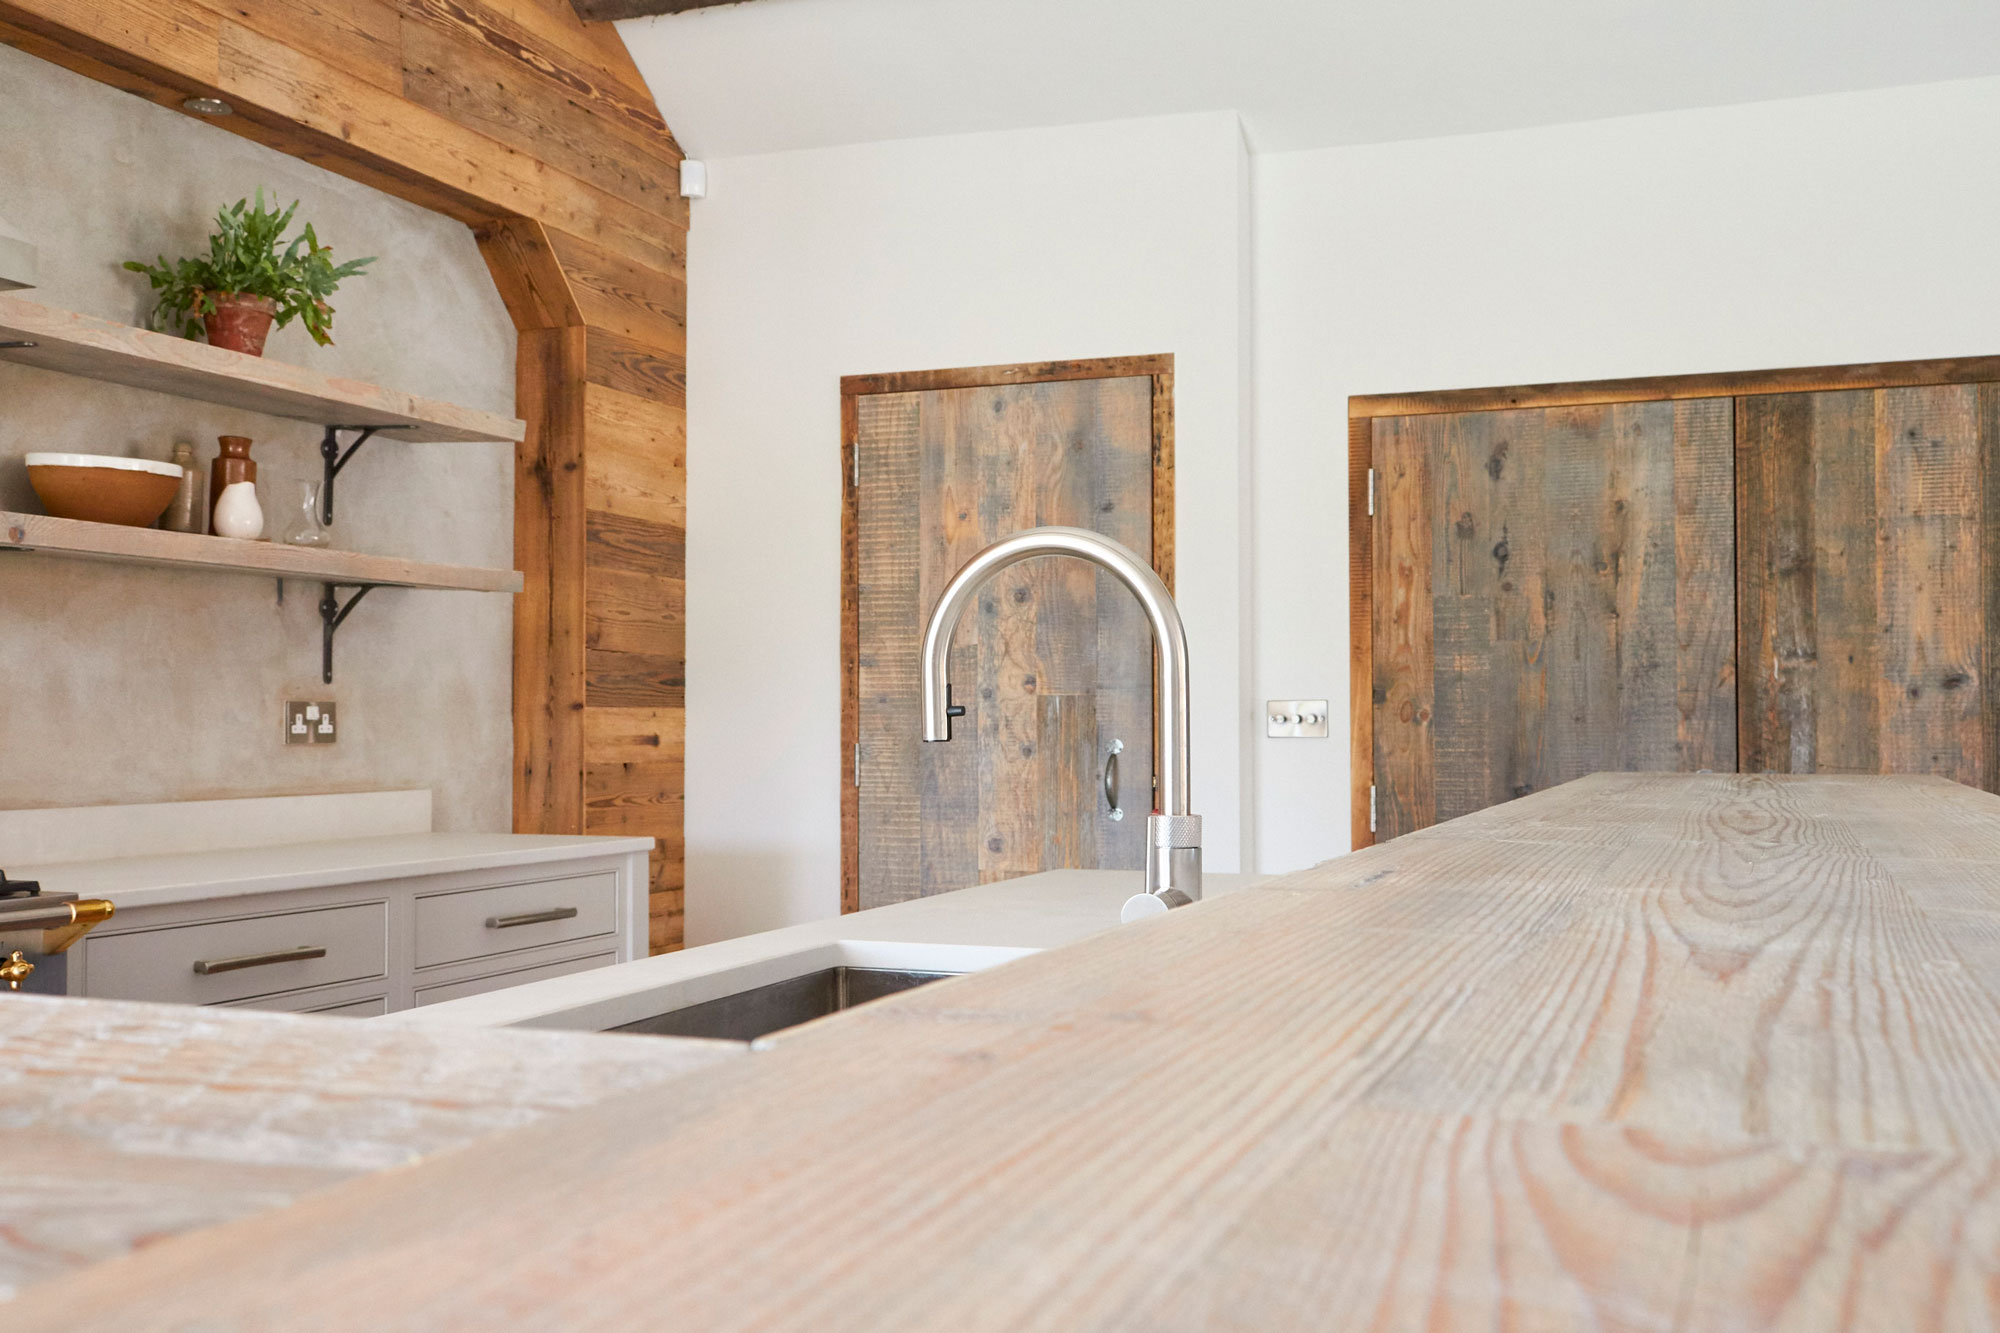 Engineered whitewash pine worktop with stainless steel kitchen tap